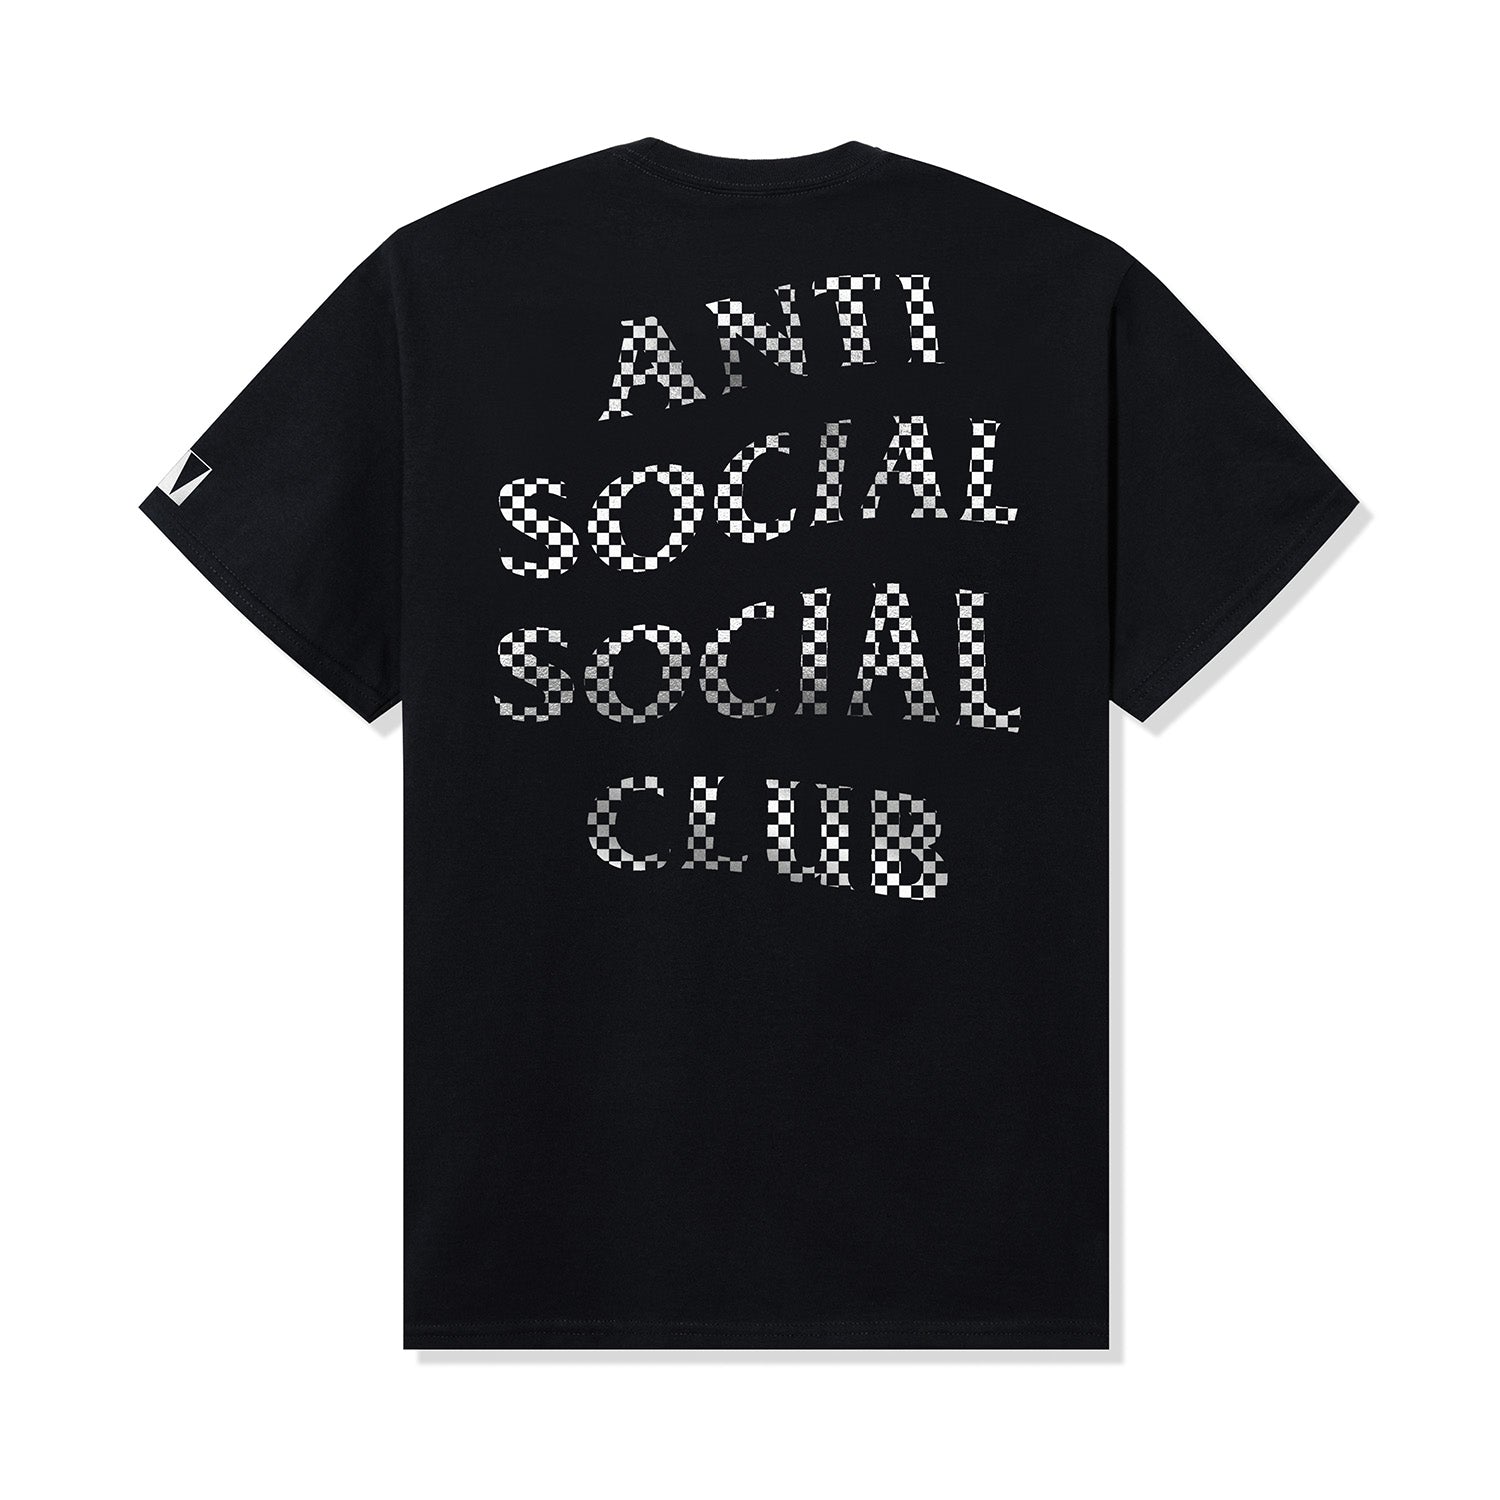 ASSC x FRAGMENT x WEEKEND SHOCK DROP – AntiSocialSocialClub